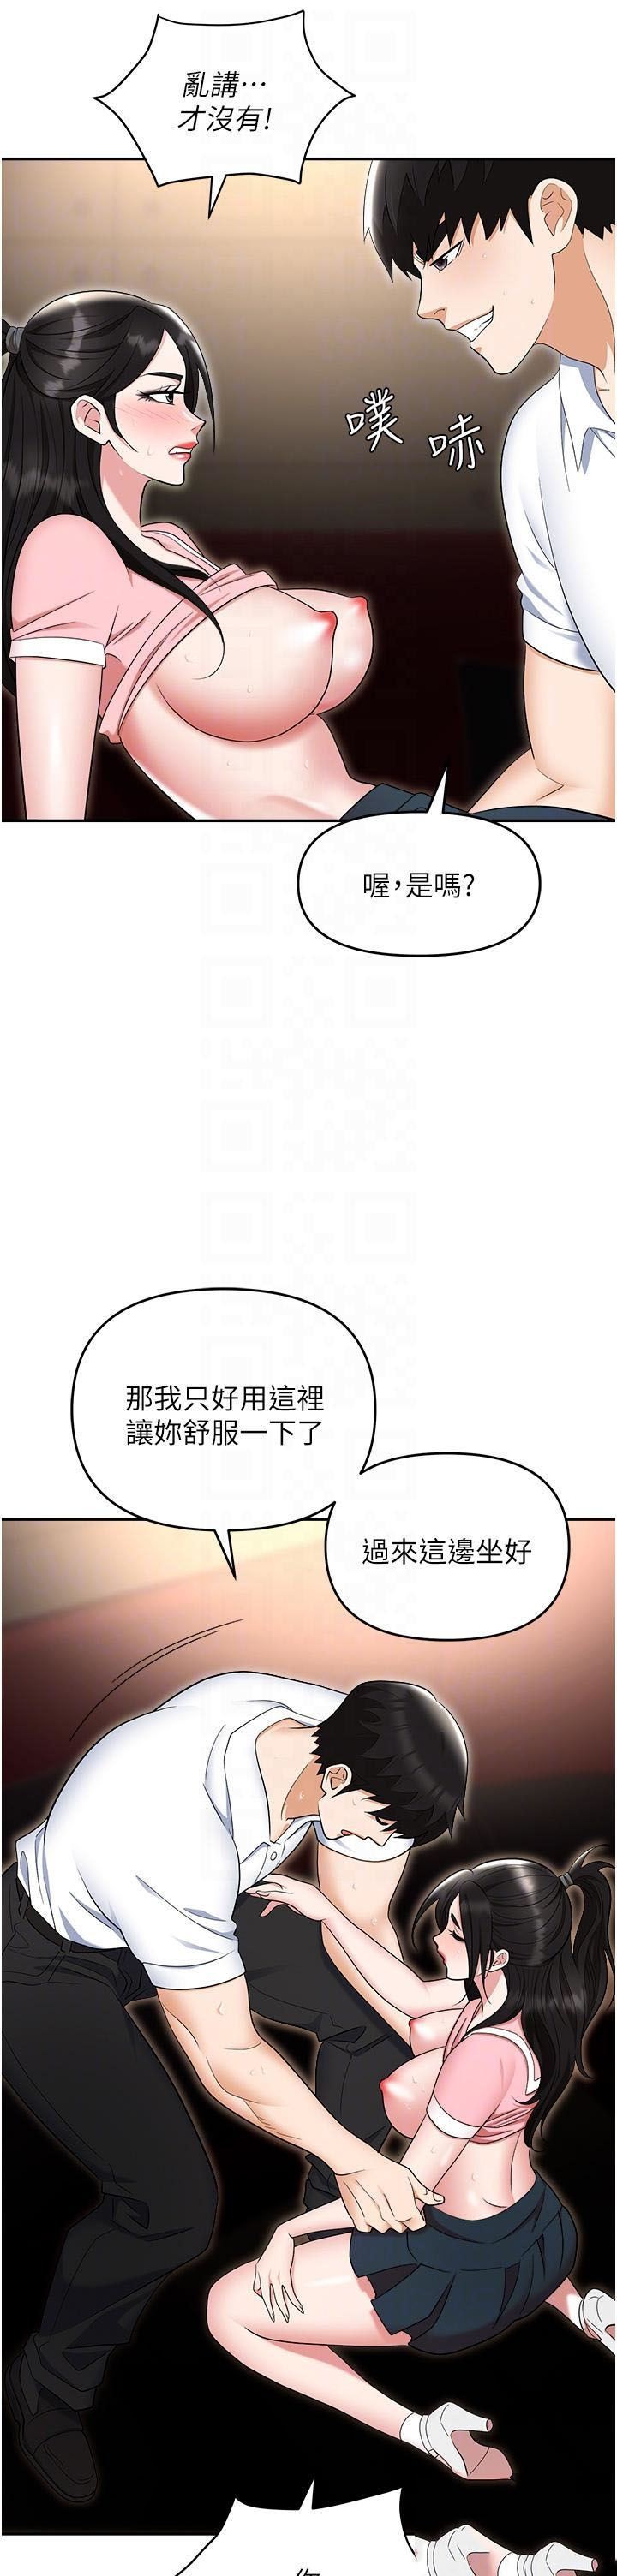 韩国污漫画 職場陷阱 第49话 教导问题学生的第一堂课 31